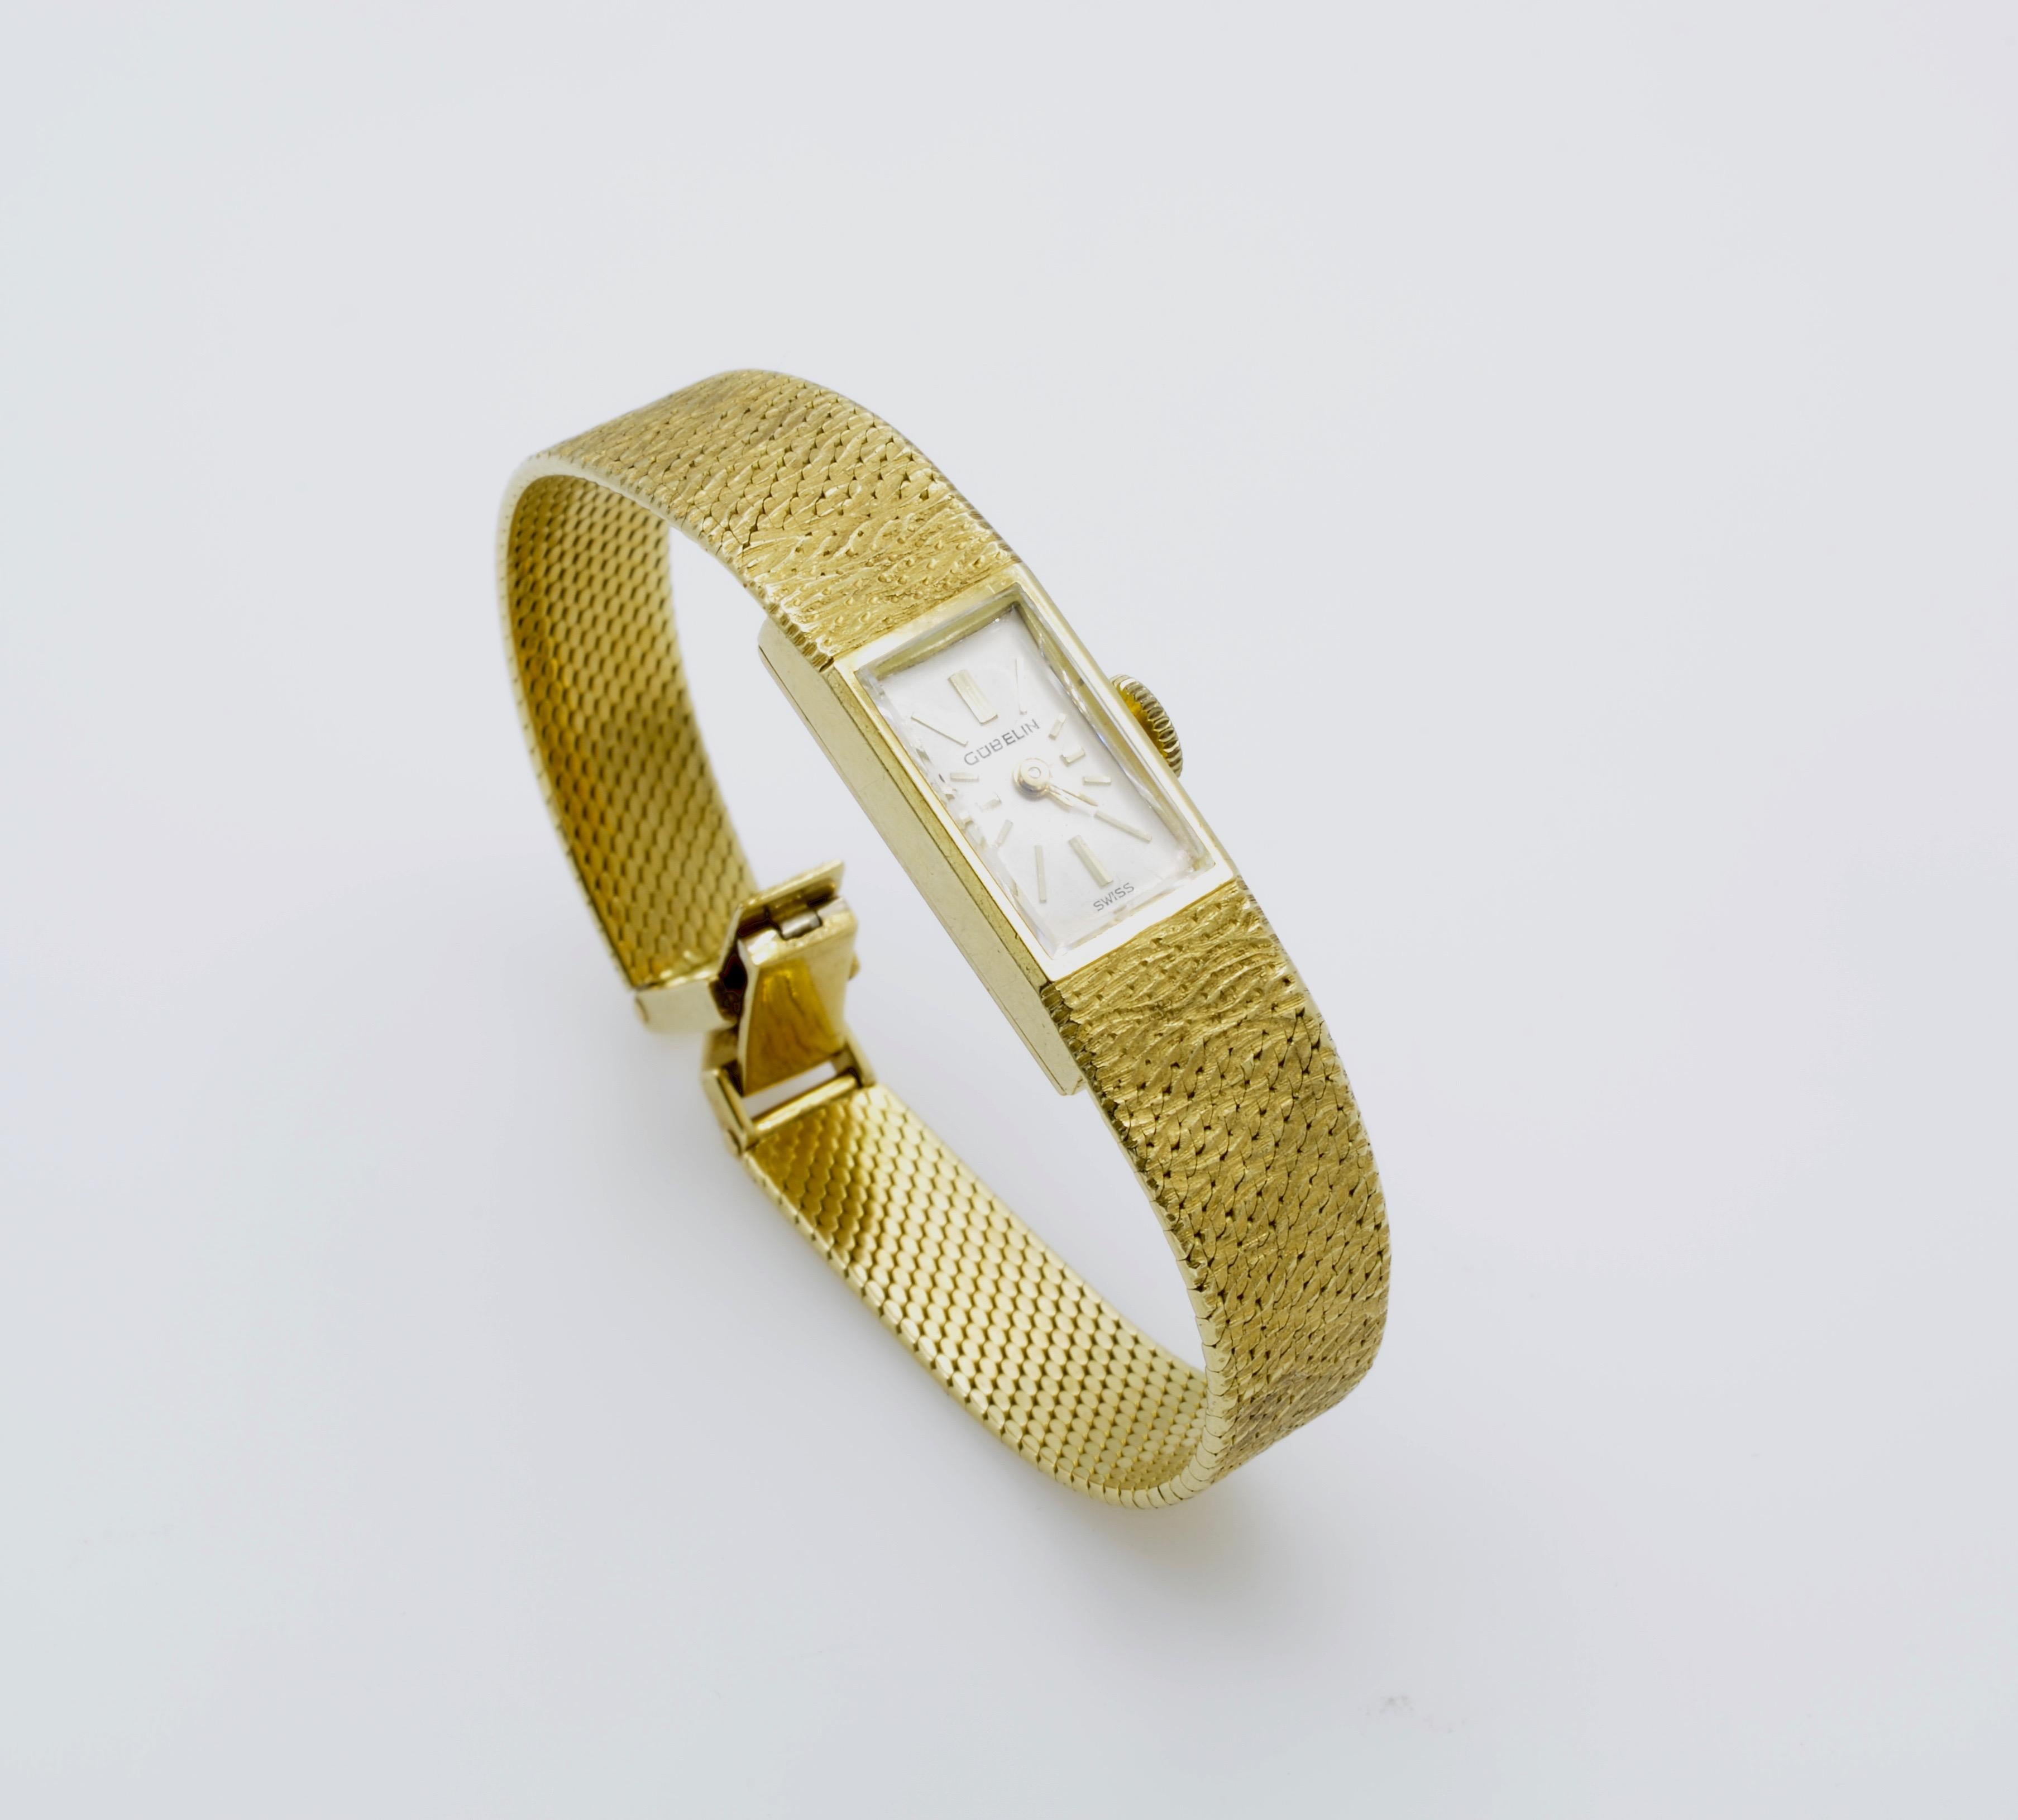 Moderne und klassische goldene Damenuhr für das Handgelenk. Sie hat ein elegantes, rechteckiges Zifferblatt an einem strukturierten Goldarmband, ist in der Schweiz hergestellt und hat ein zeitloses Design. Das Uhrwerk ist schön und funktioniert gut,